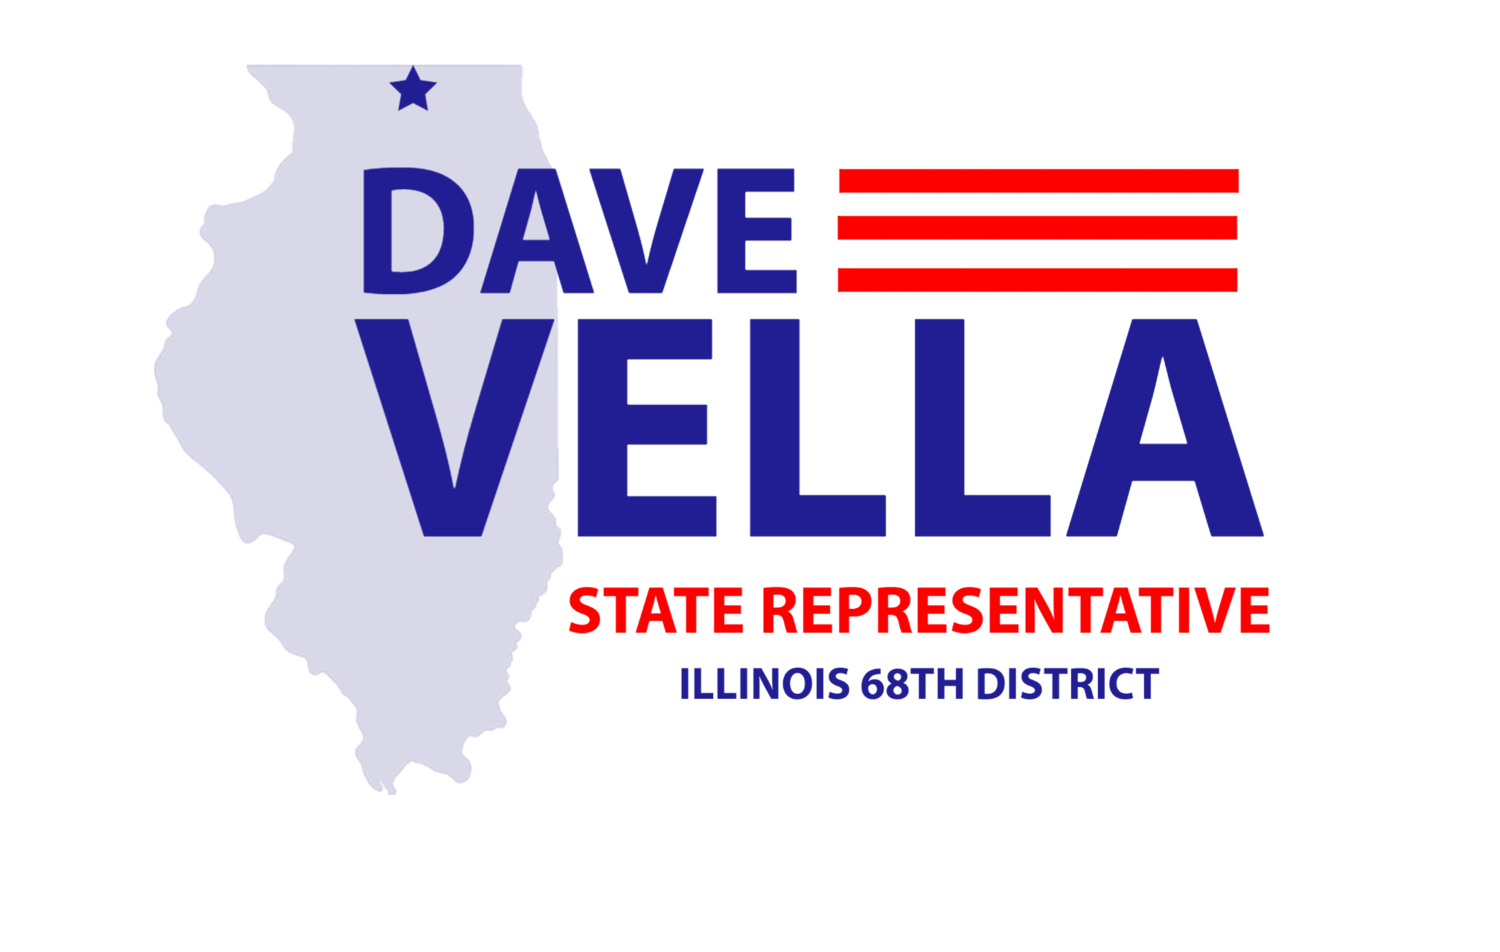  State Representative Dave Vella, 68th District